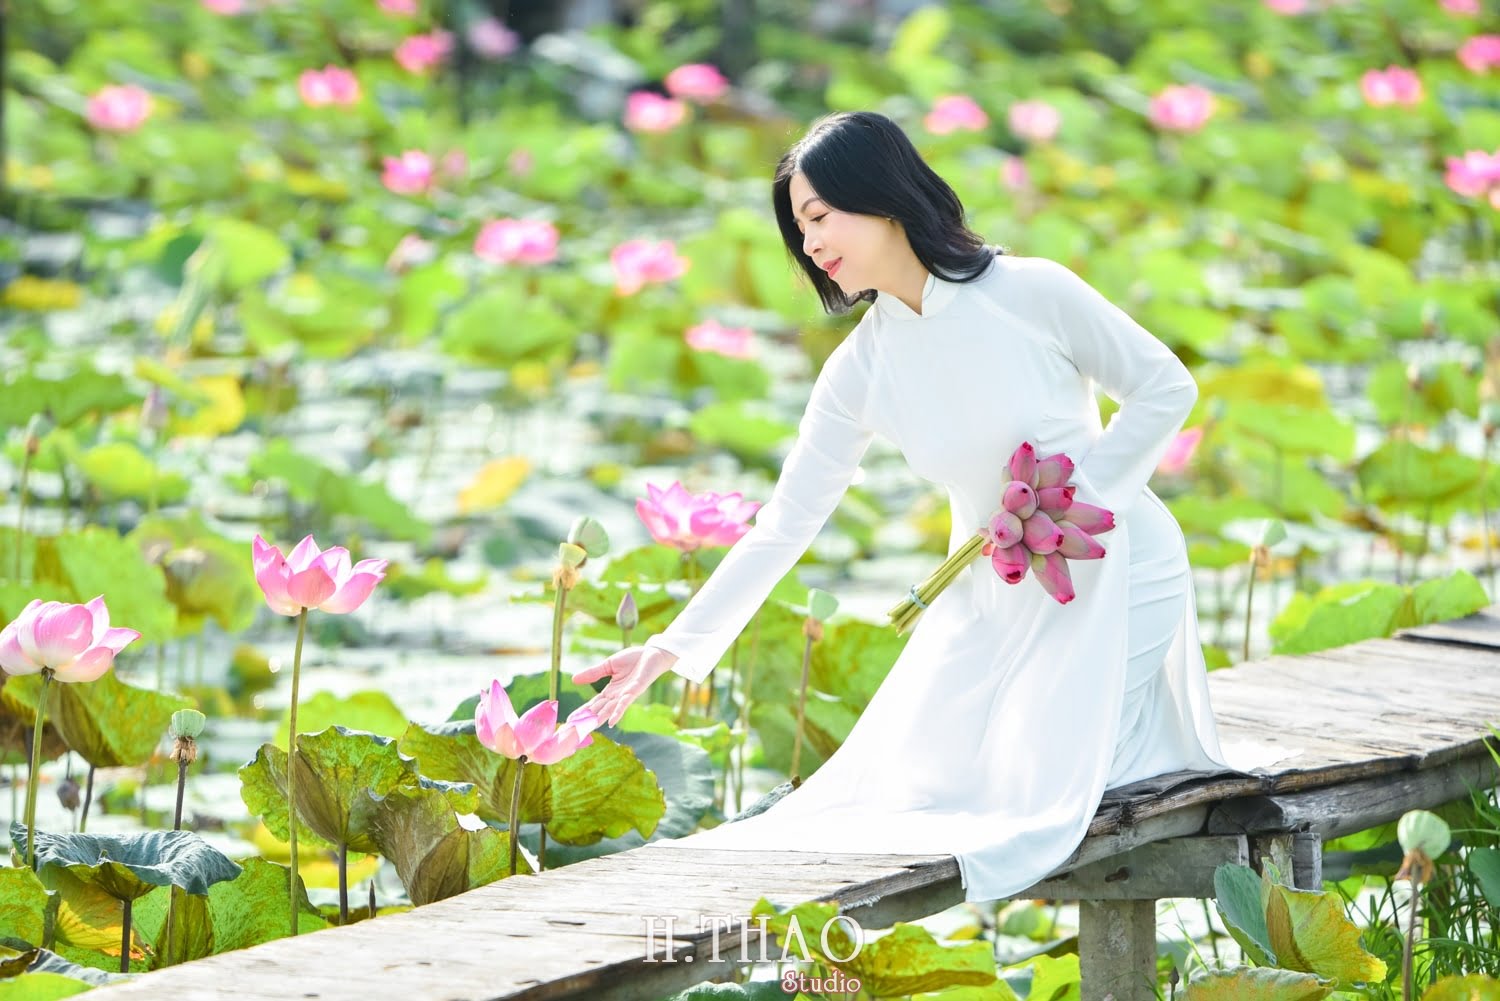 Anh Hoa sen 8 min - Địa điểm chụp ảnh áo dài đẹp ở Thành phố Hồ Chí Minh